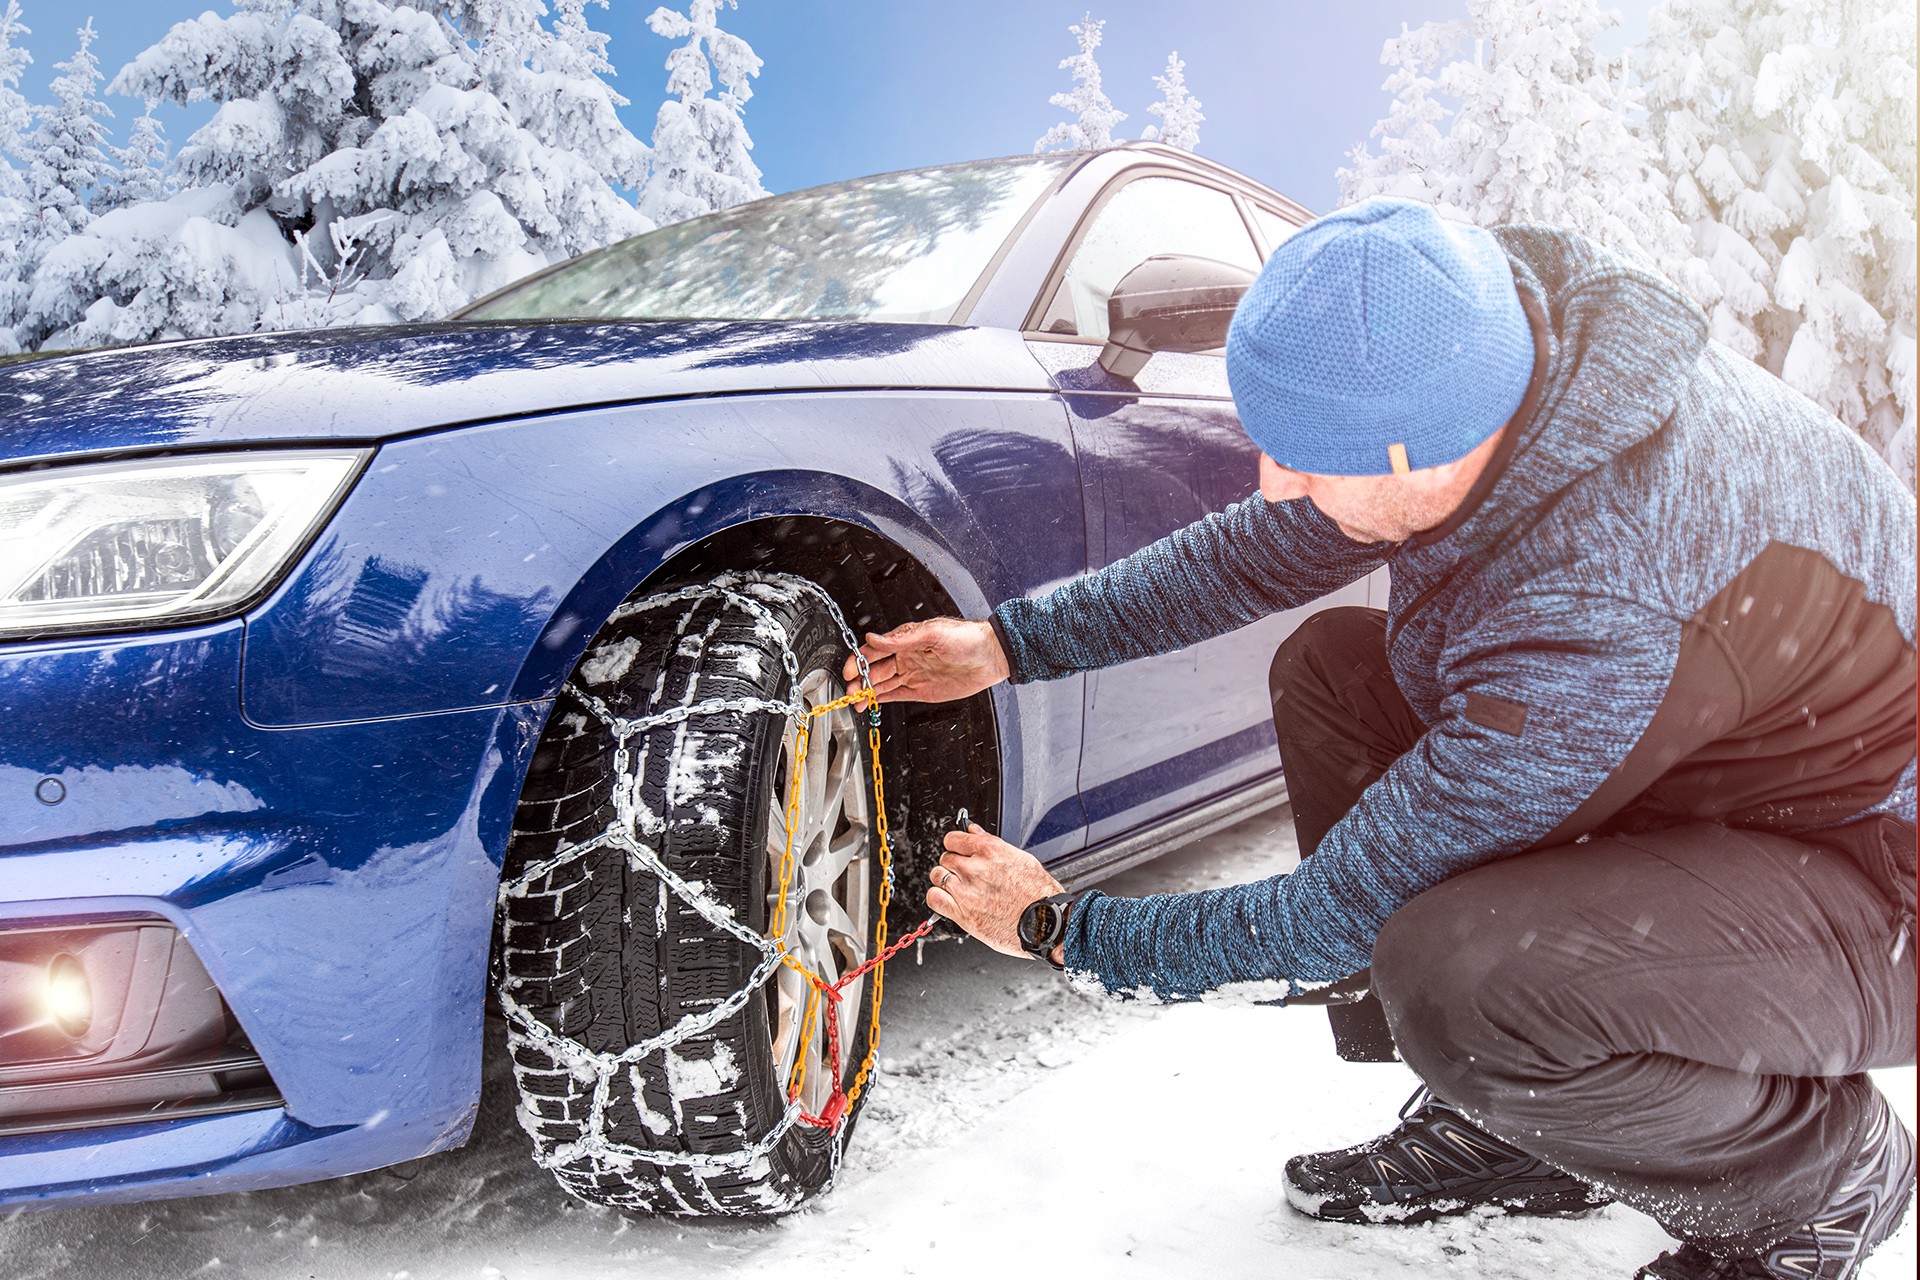 Ratgeber: Nicht jede Schneekette passt zum Fahrzeug - Magazin